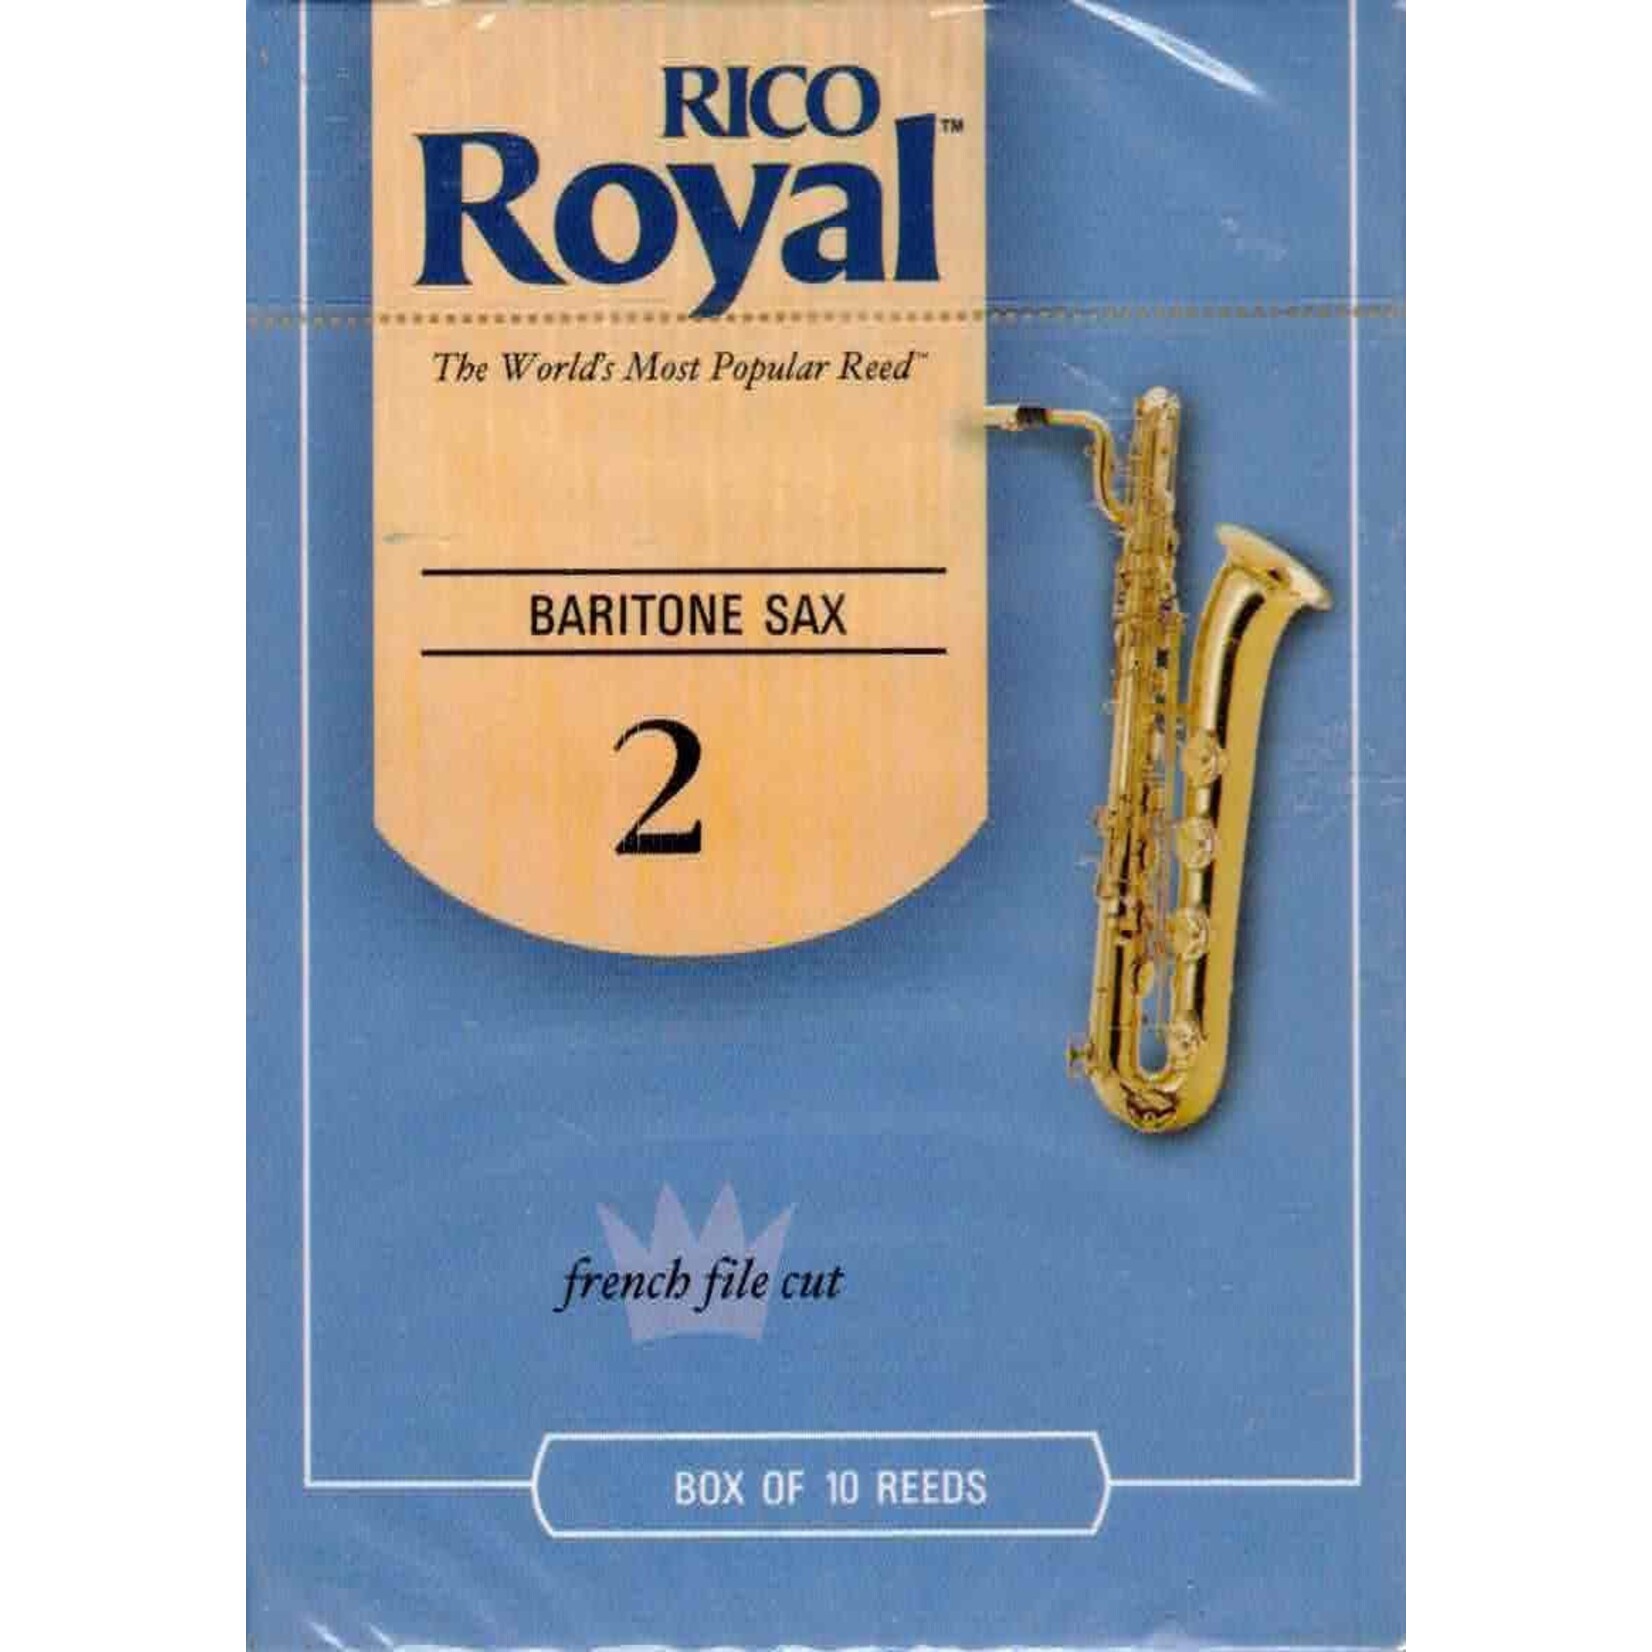 Rico Royal RLB1020 Baritone Sax Reeds Box Of 10 (Strength 2)